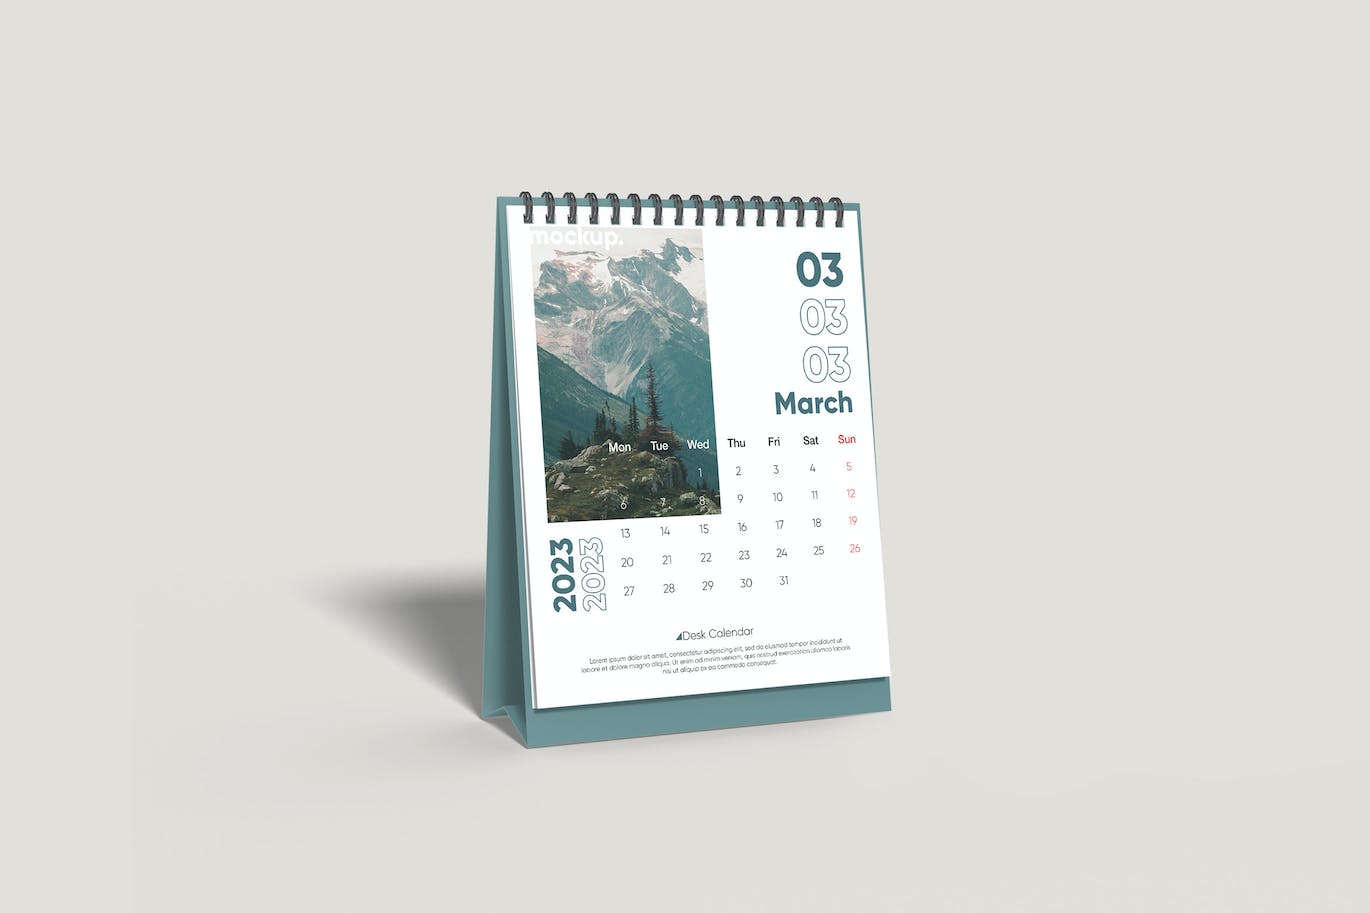 台历日历设计样机 Desk Calendar Mockup 样机素材 第1张